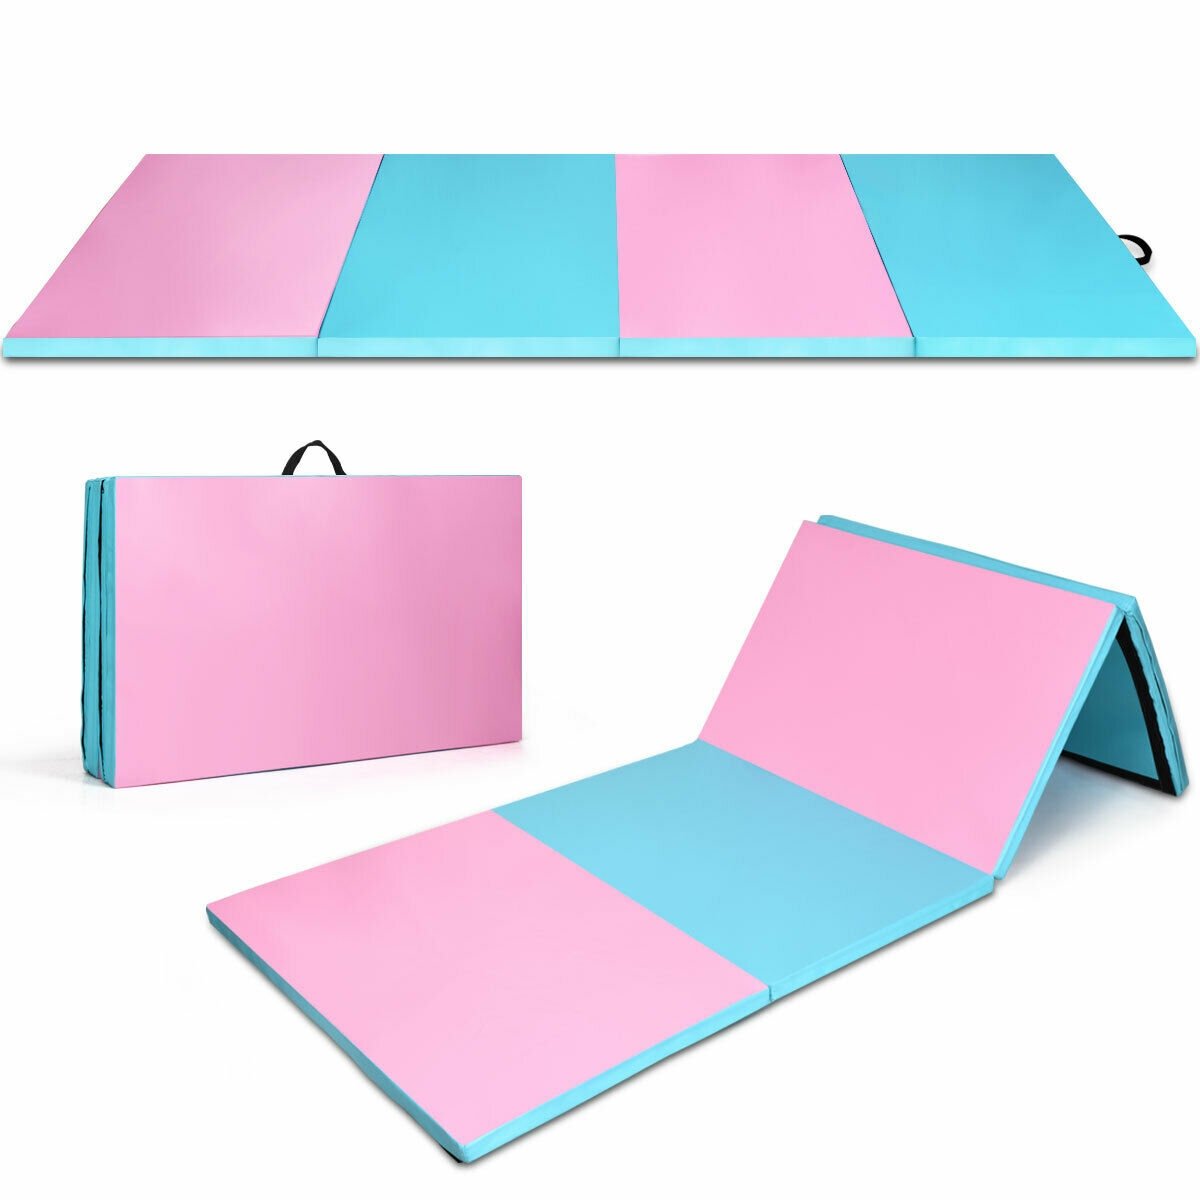 4' x 10' x 2" Folding Gymnastics Tumbling Gym Mat, Blue - Gallery Canada